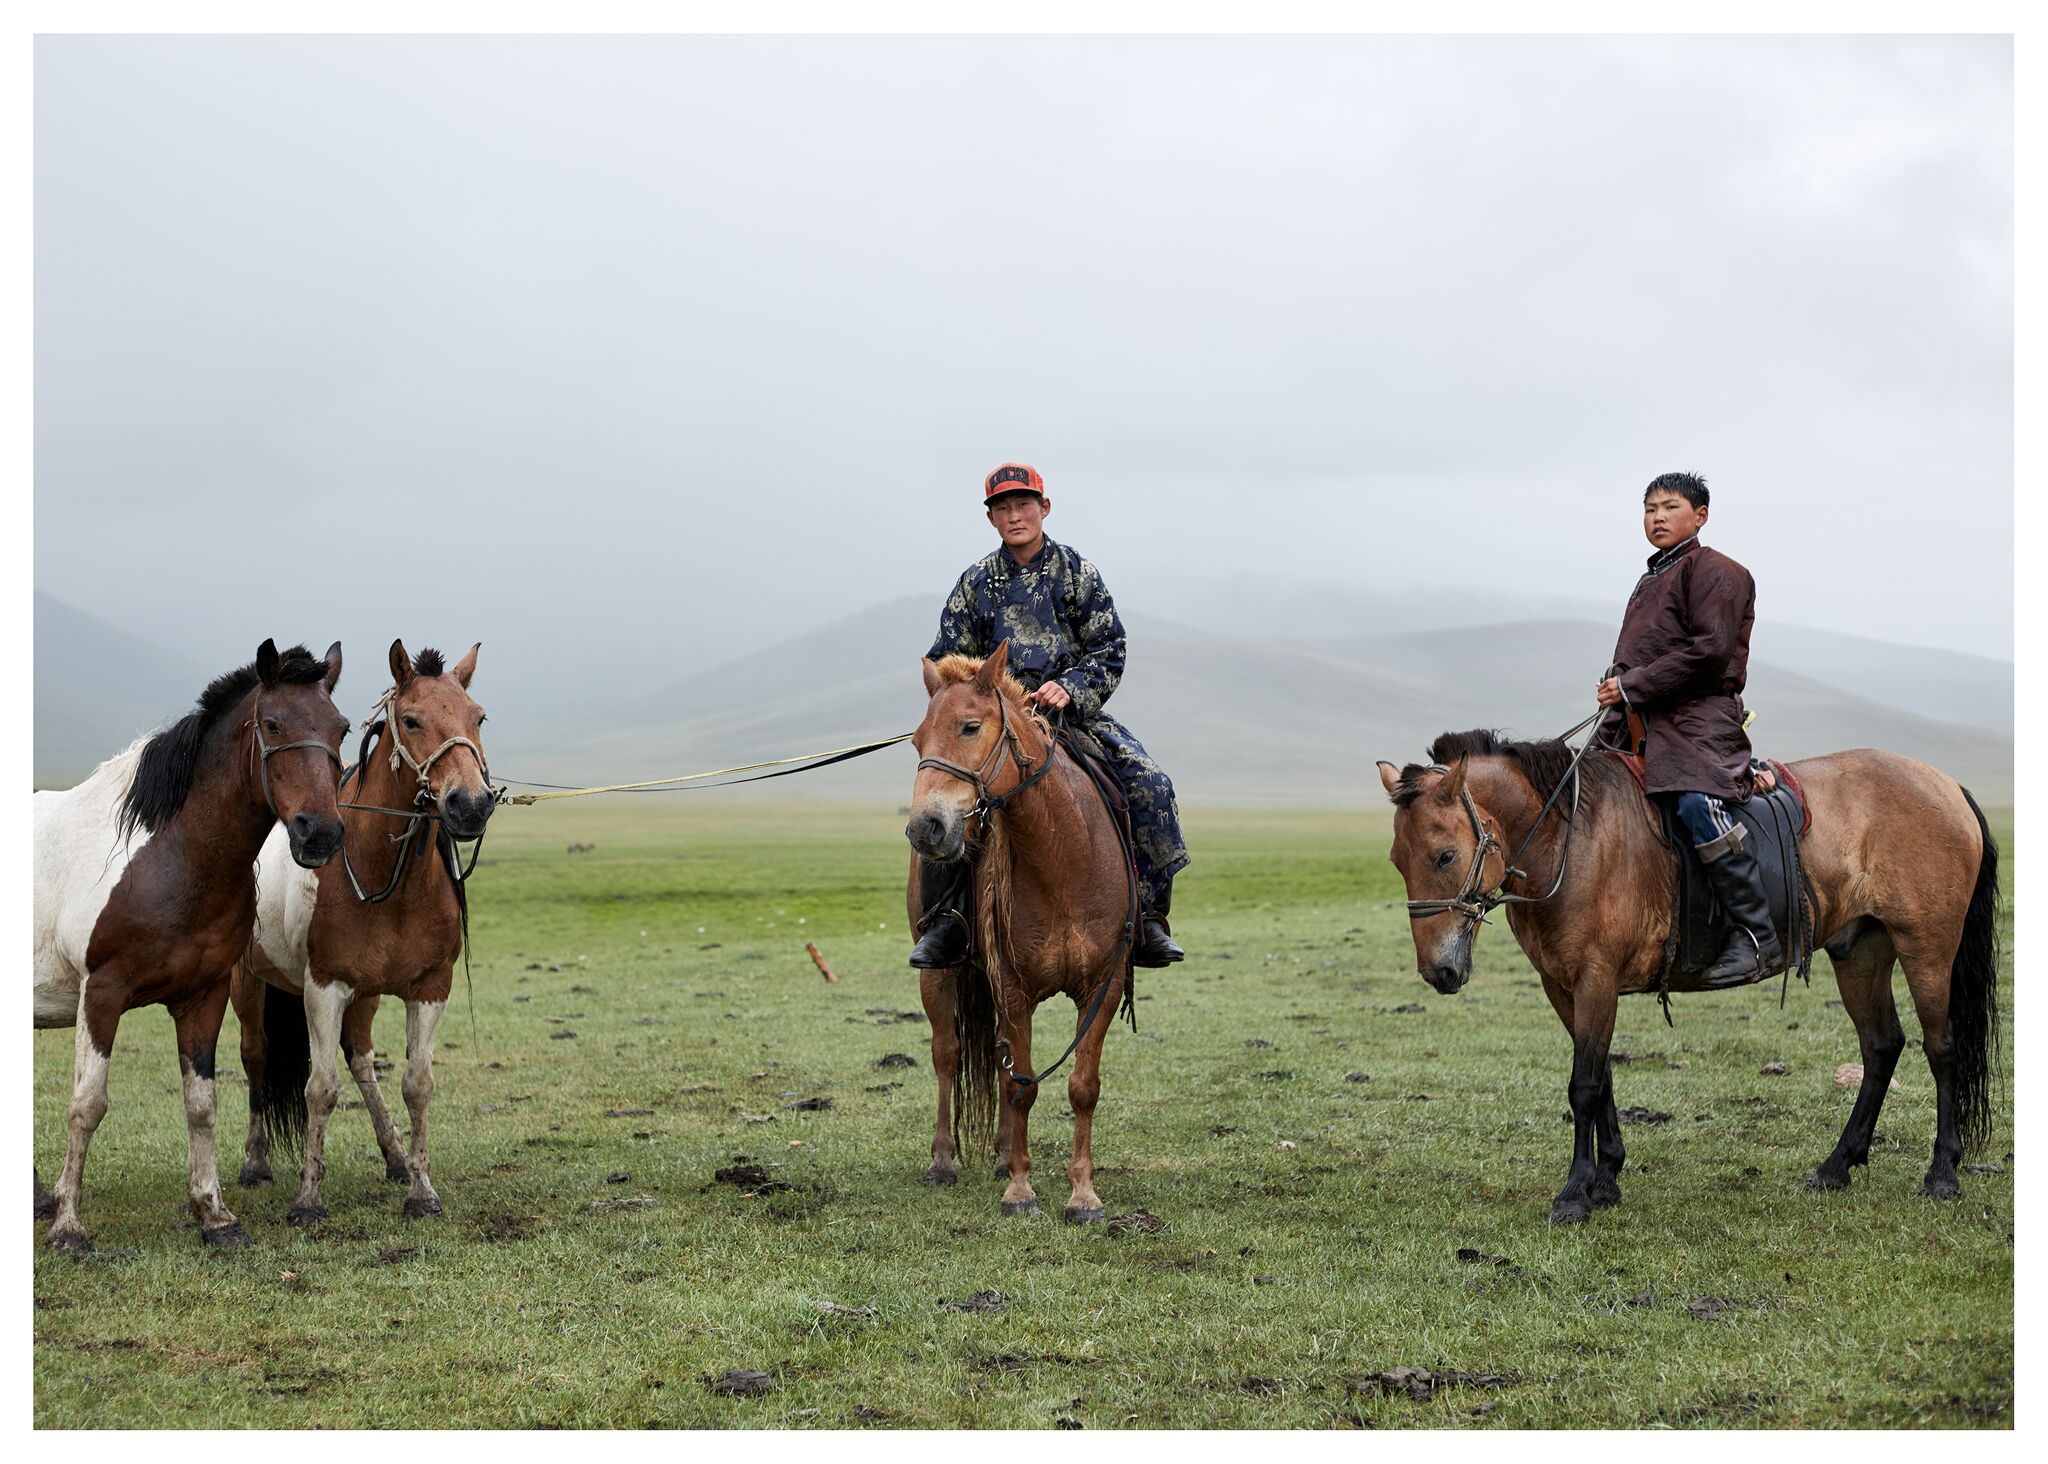 Farmers in Mongolia, courtesy Jose Ahedo